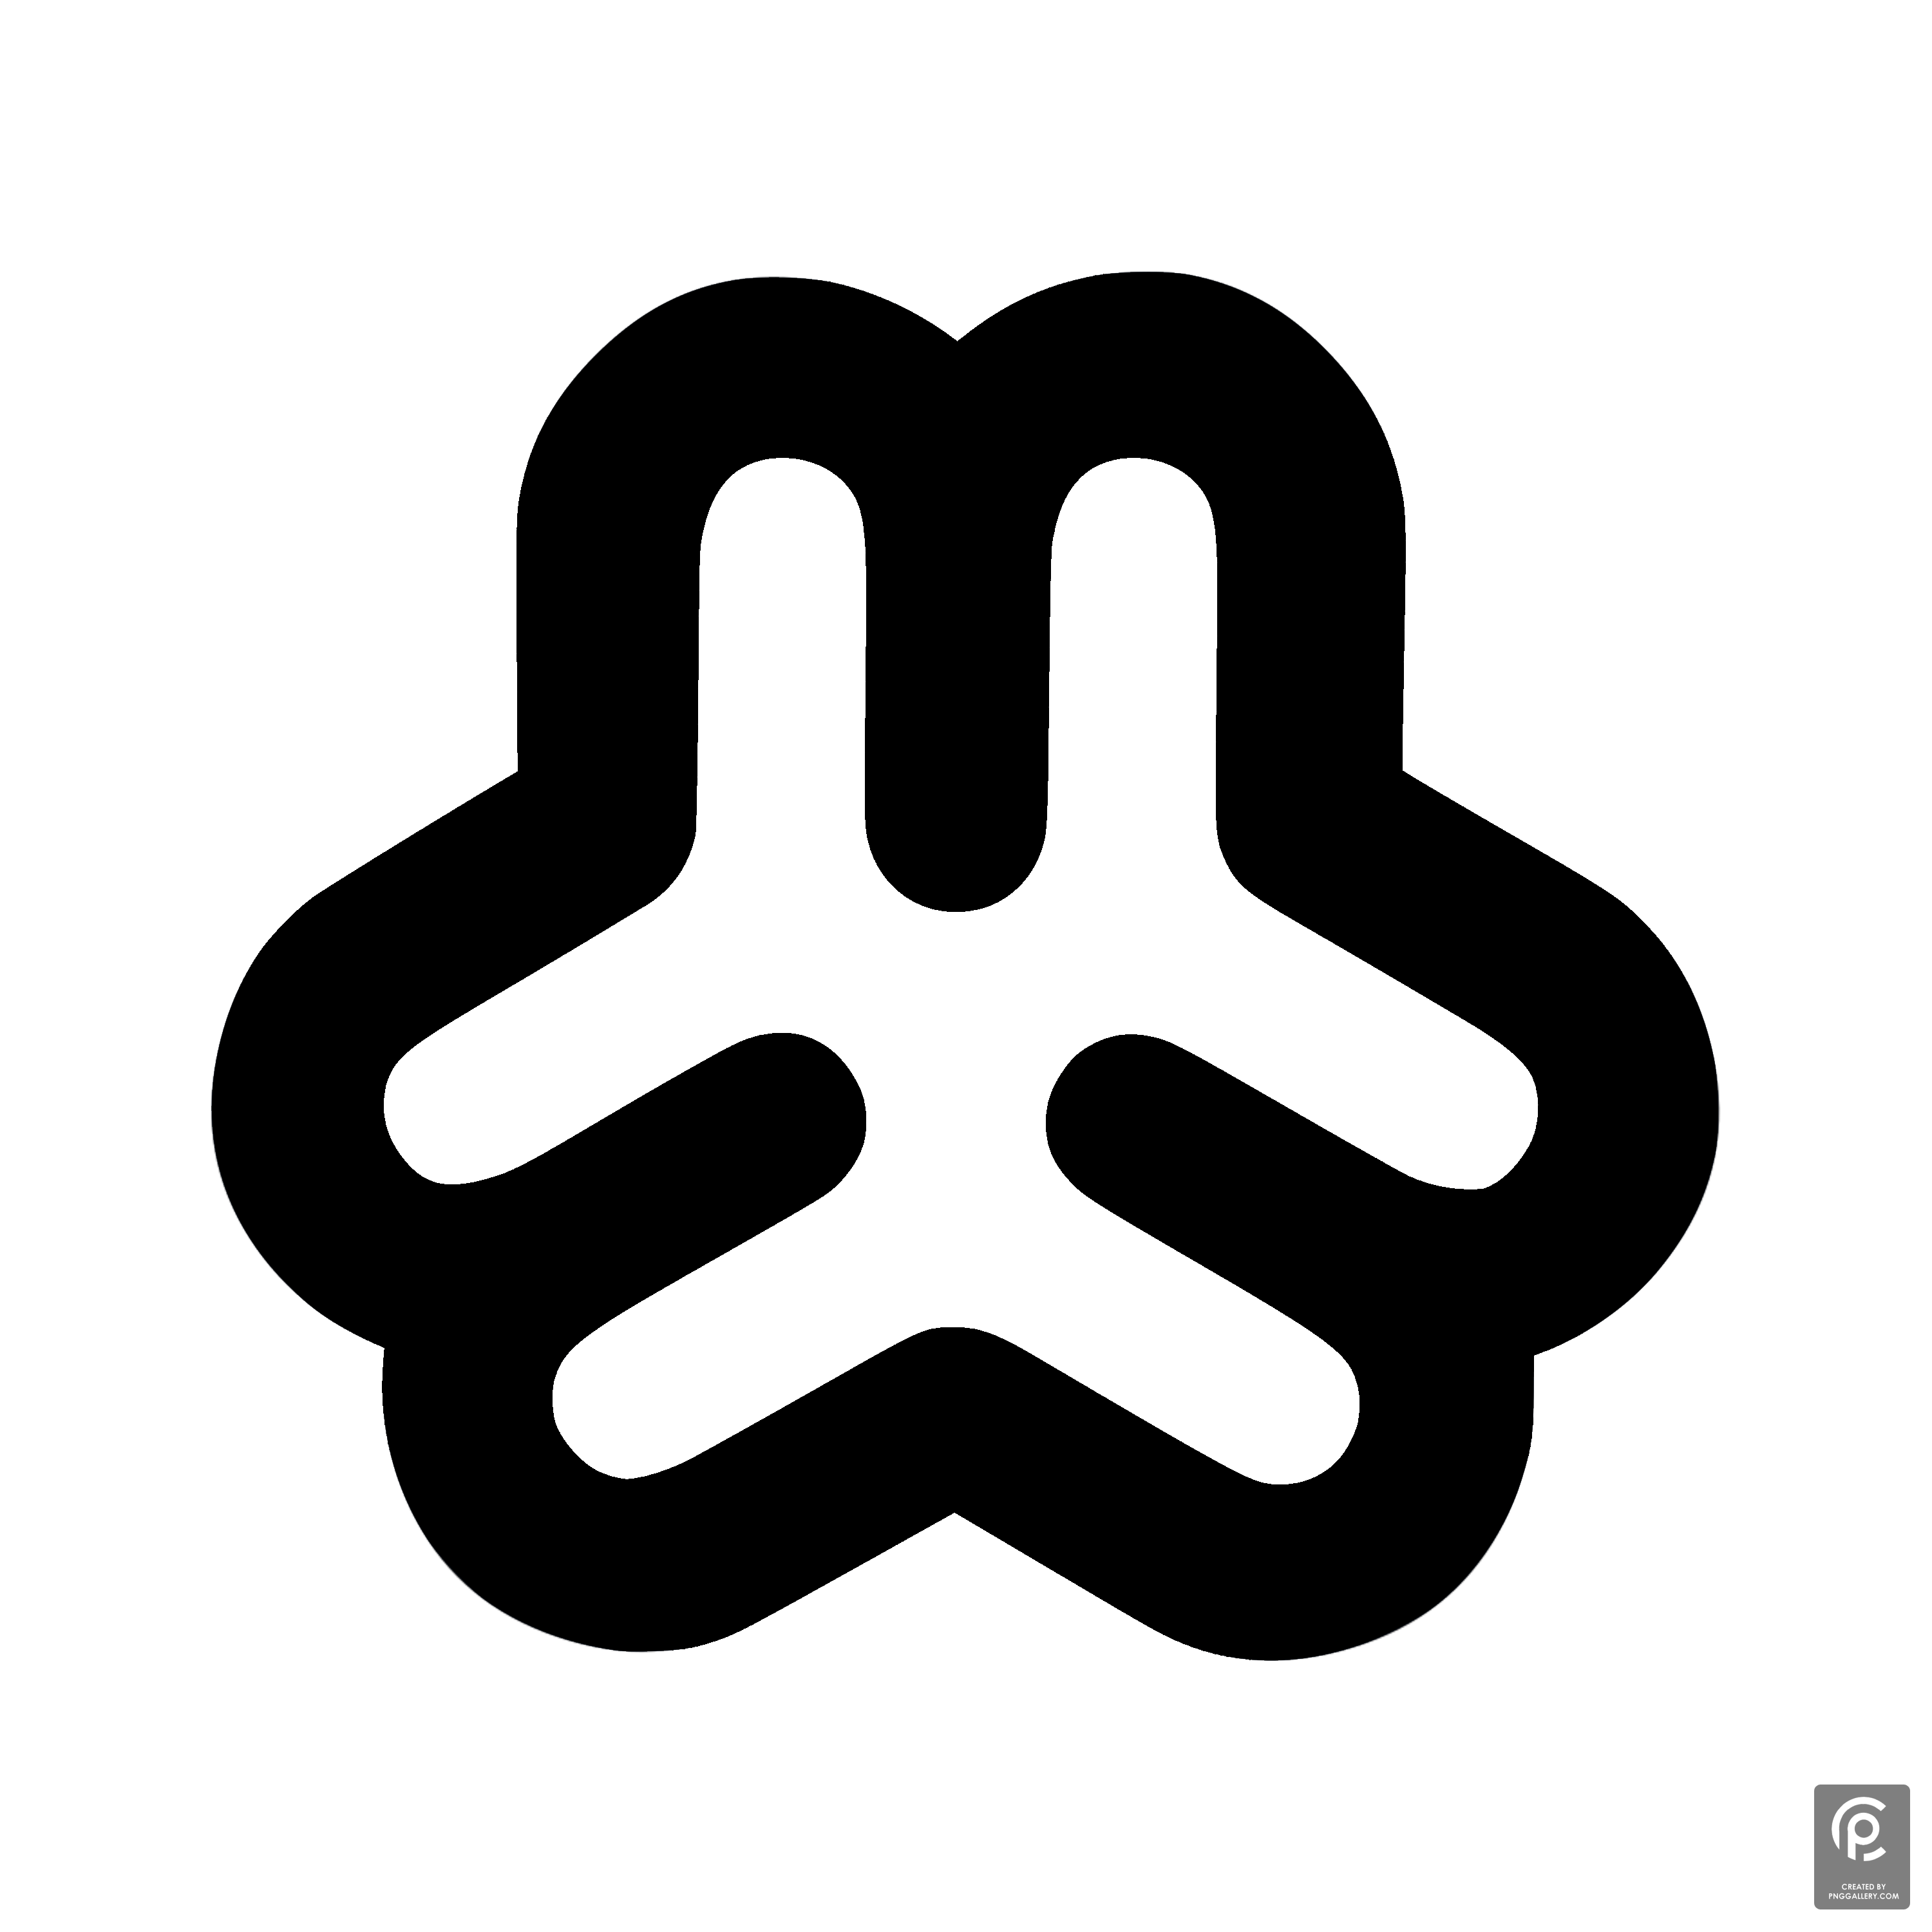 Webmin Logo Transparent Gallery